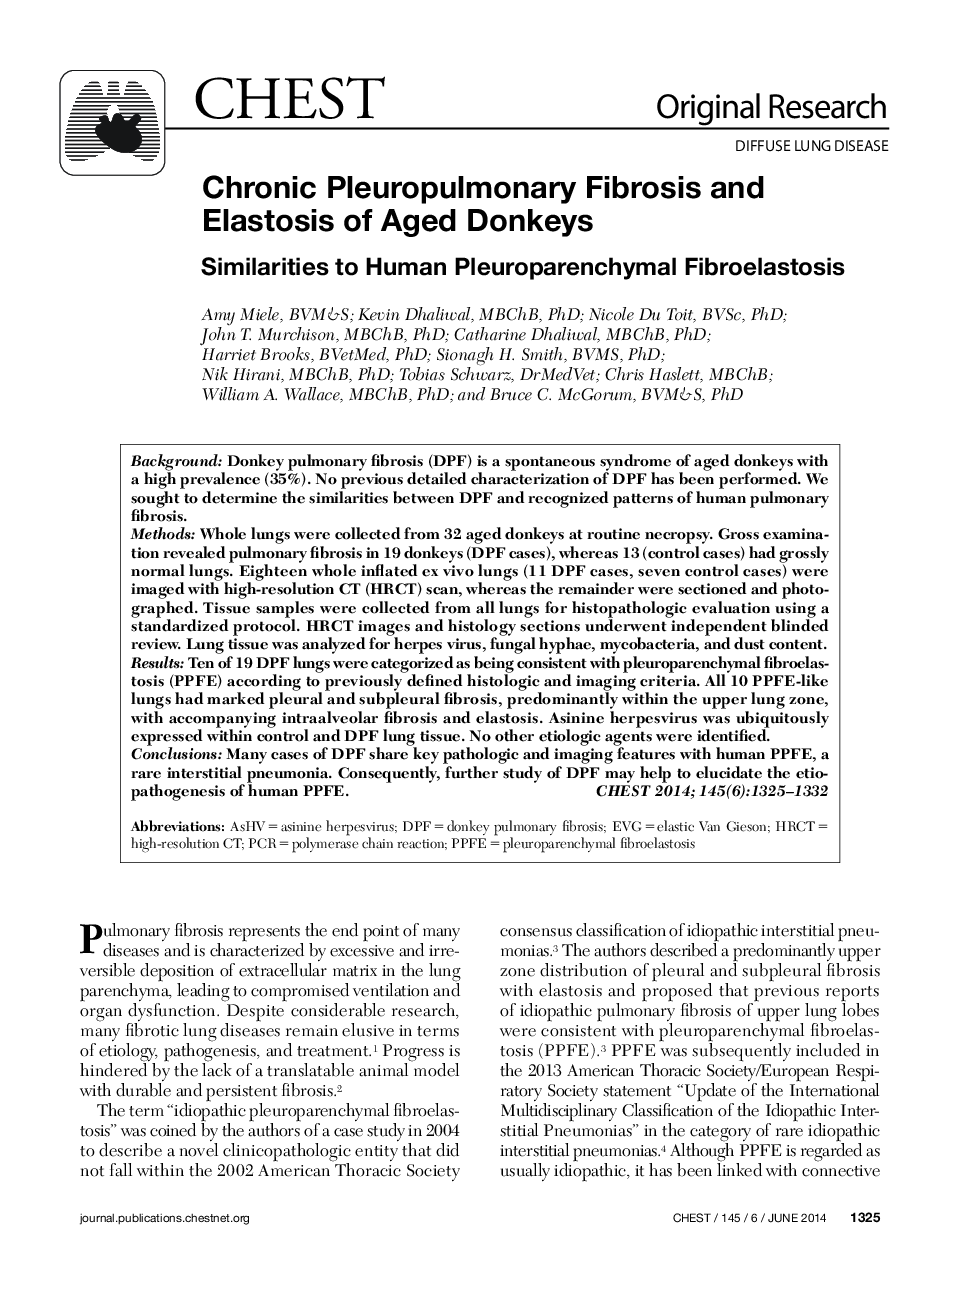 Chronic Pleuropulmonary Fibrosis and Elastosis of Aged Donkeys